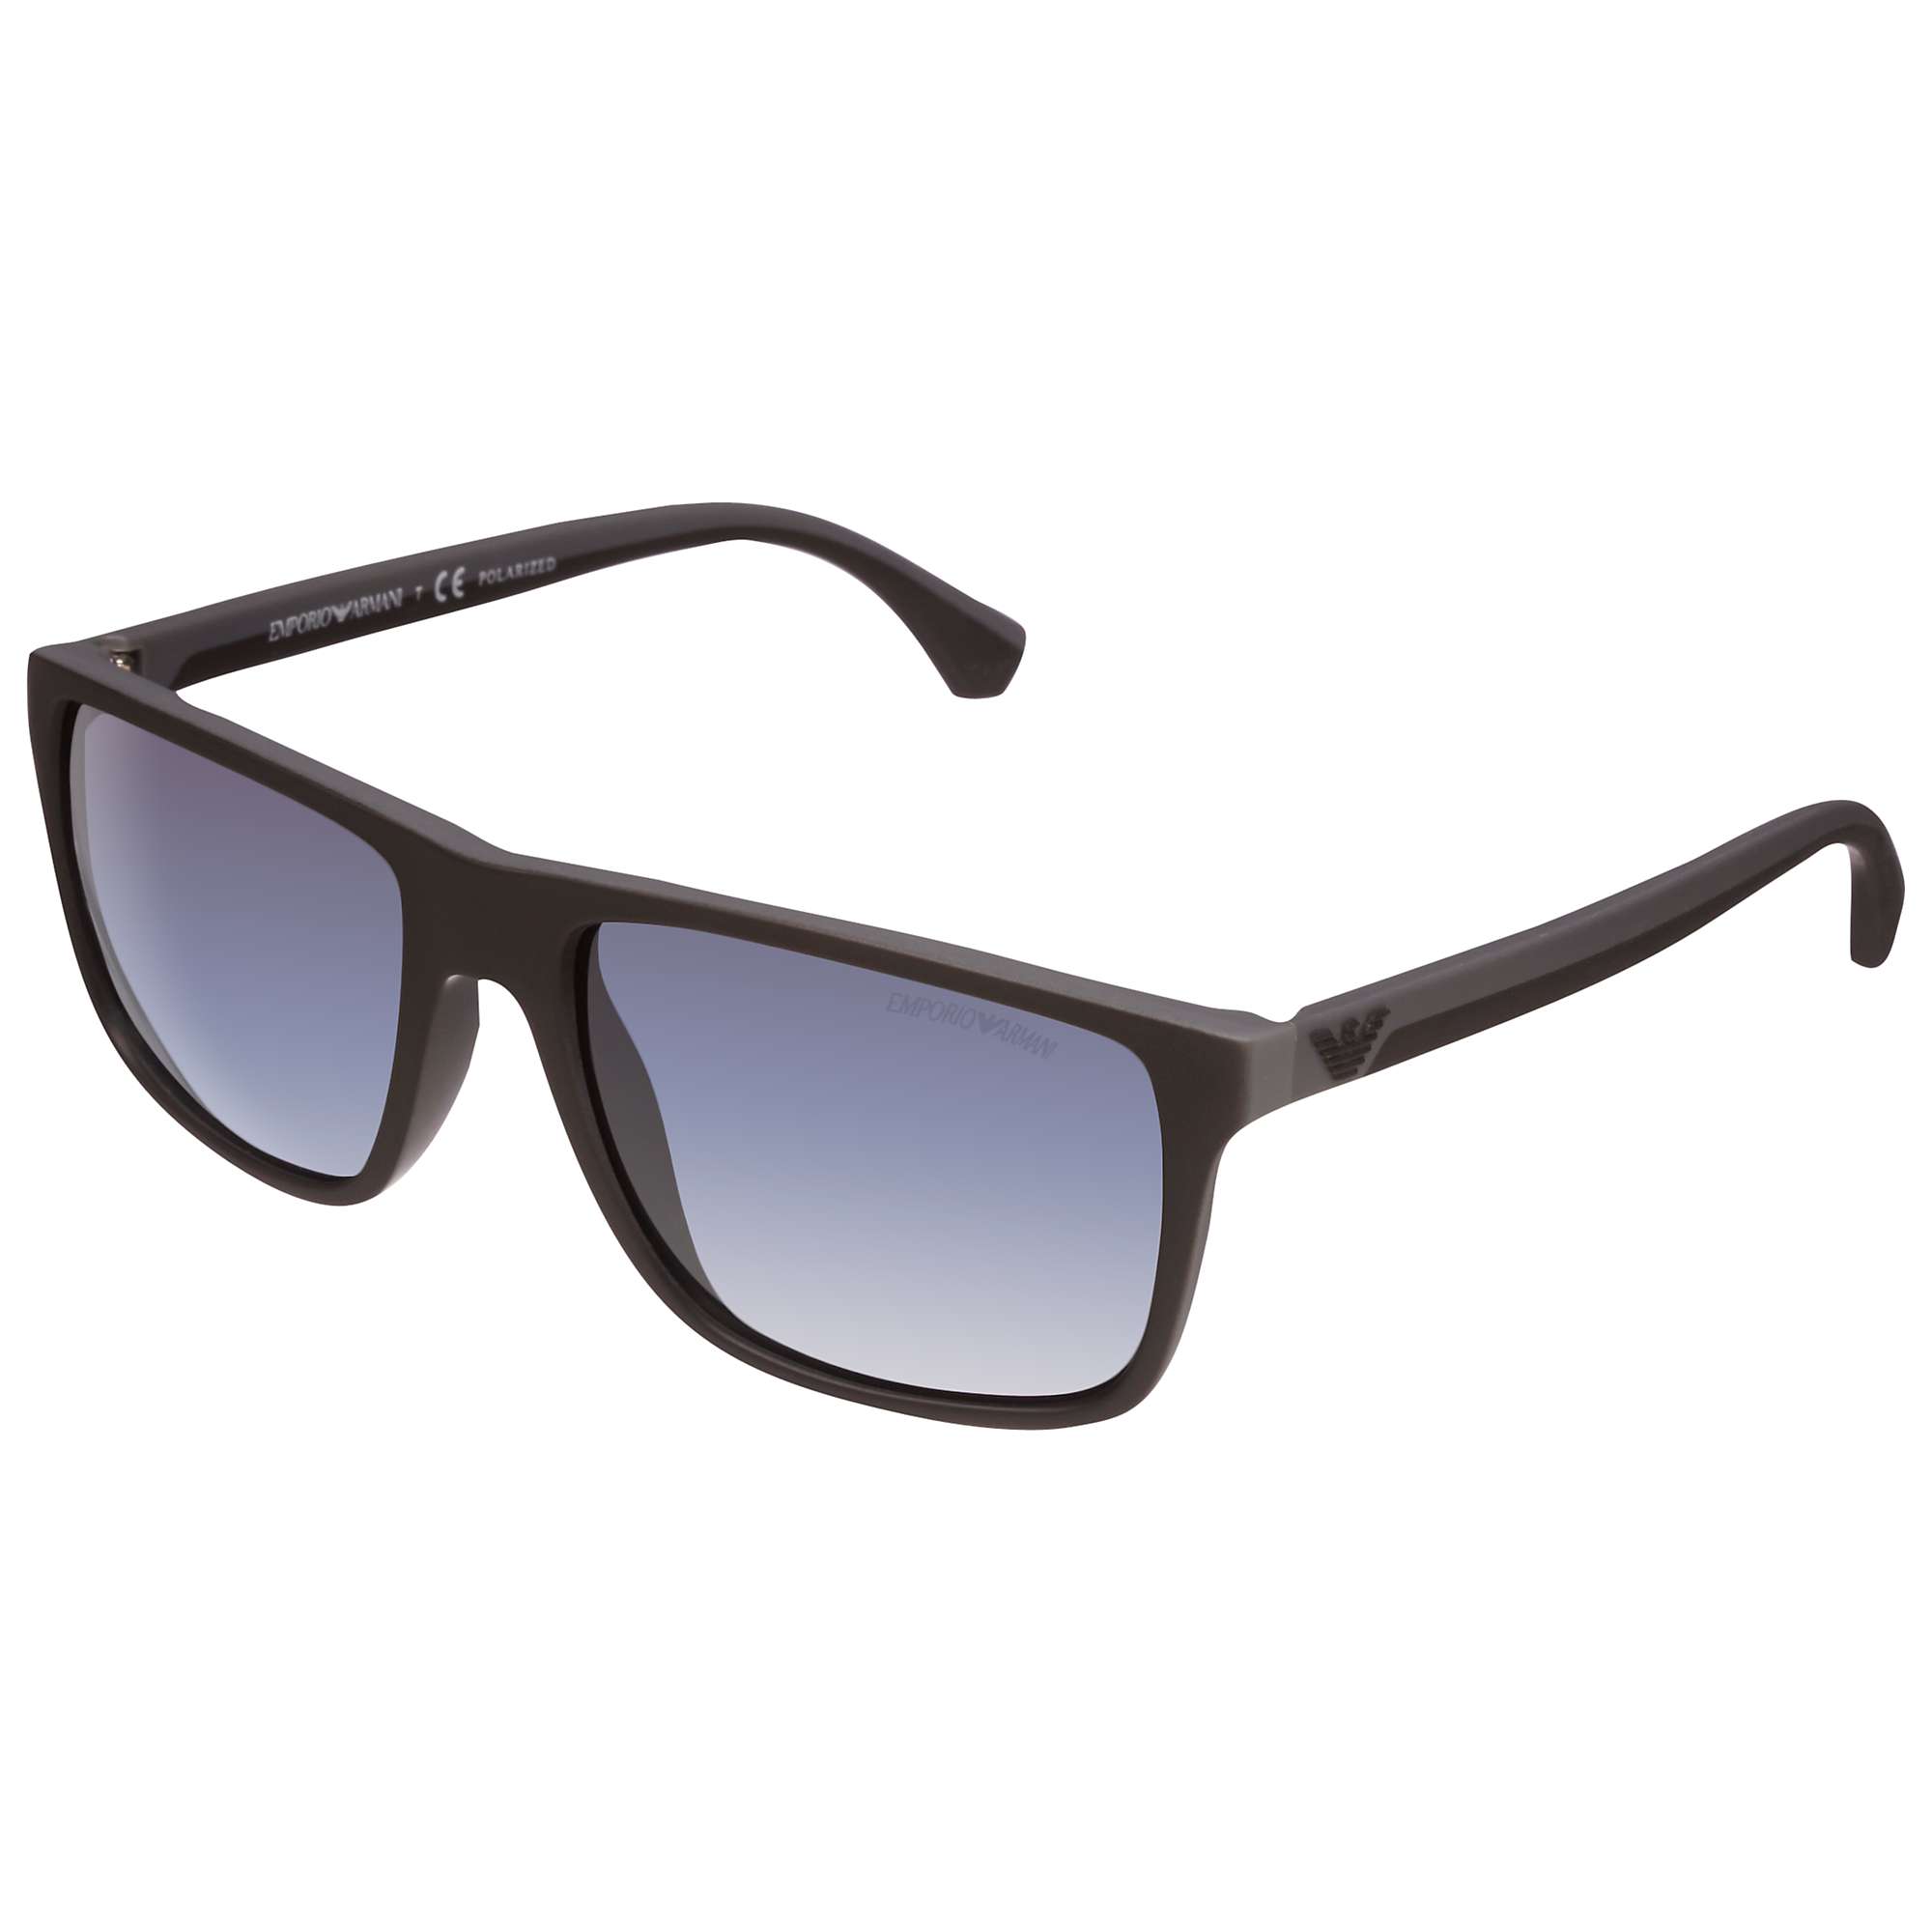 Buy Emporio Armani EA4033 Square Sunglasses Online at johnlewis.com